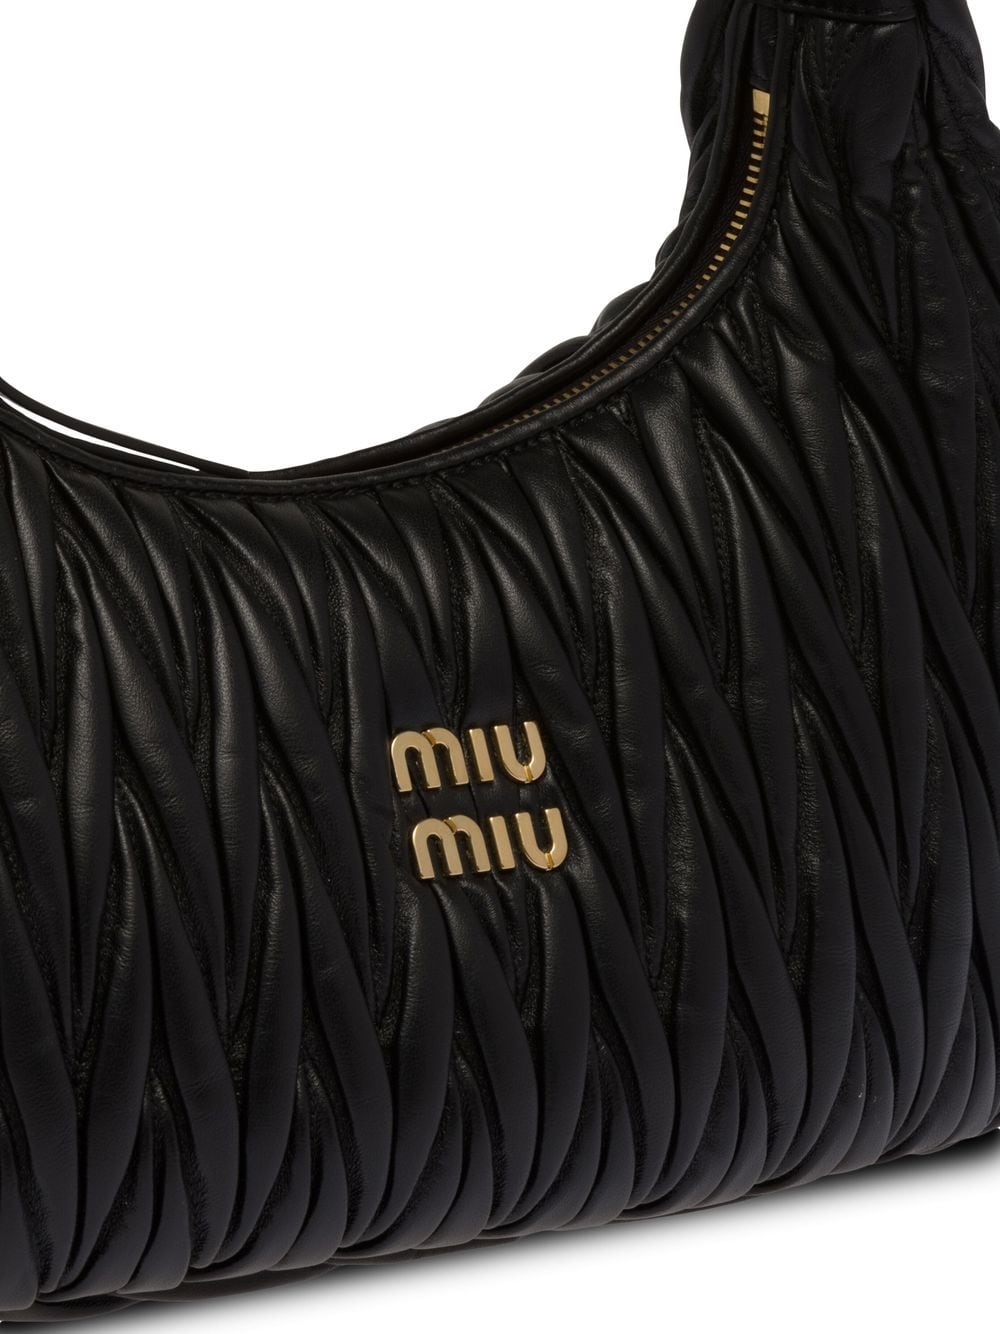 Miu Miu Miu Wander shopping bag black matelassé